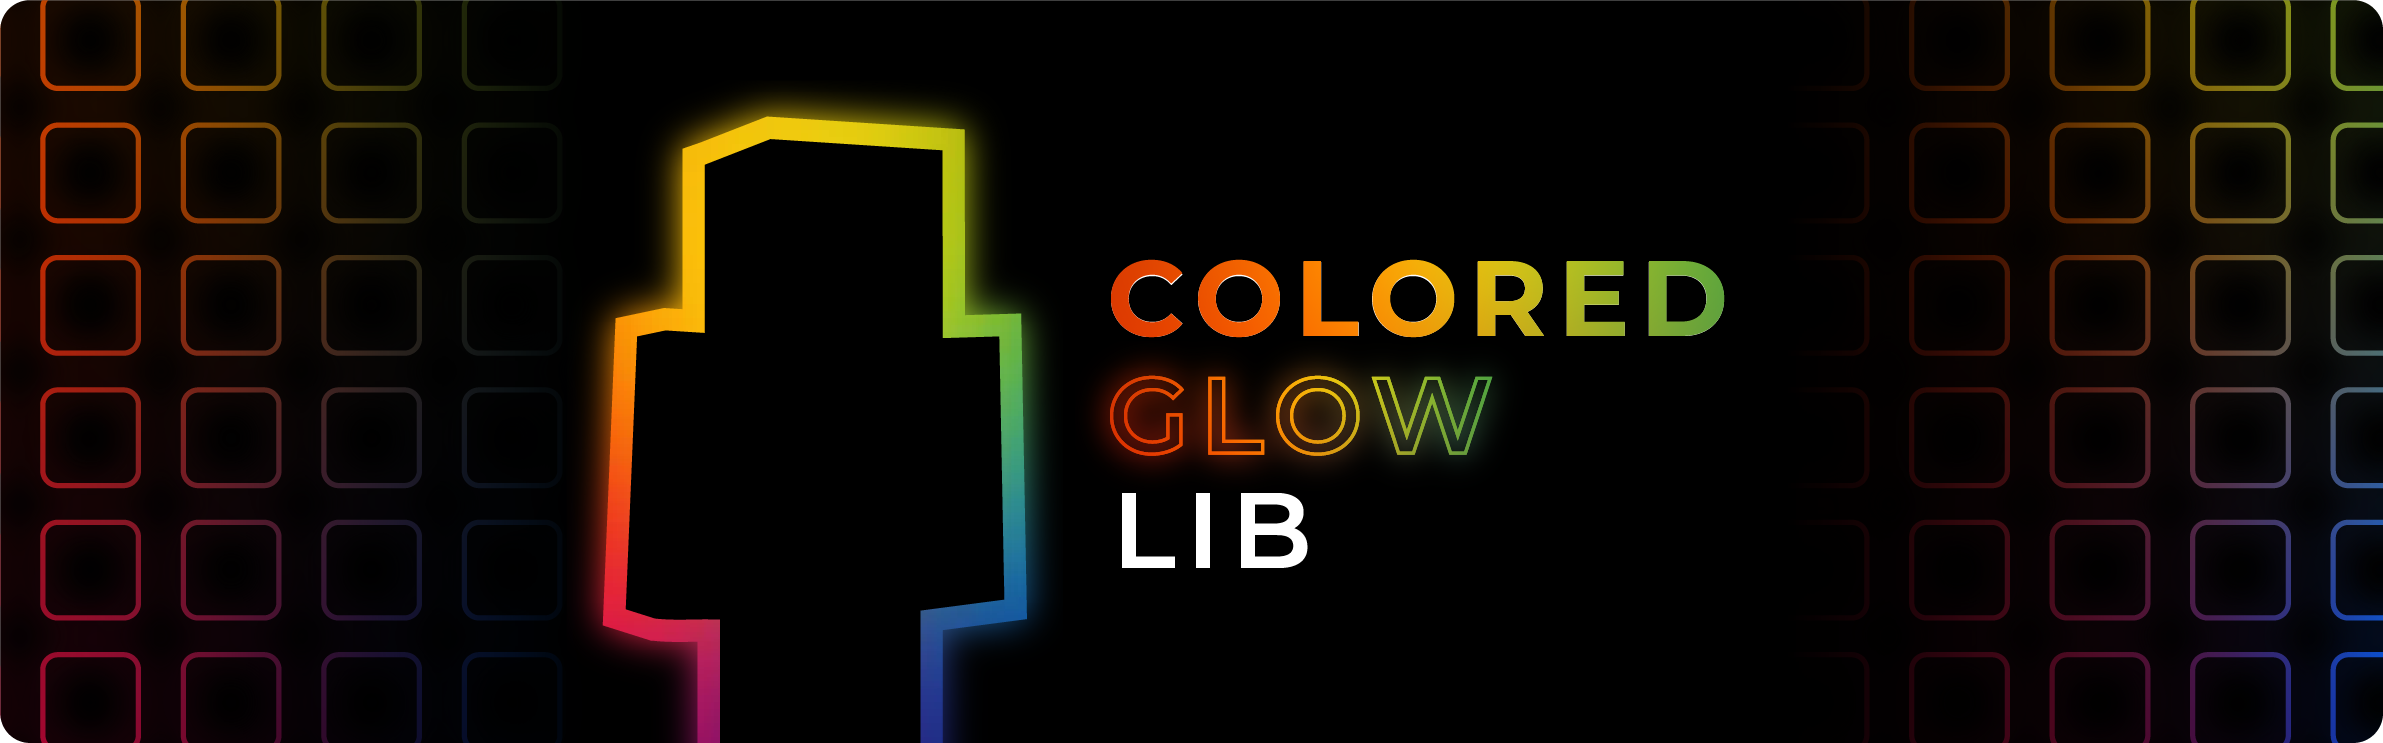 ColoredGlowLib Banner